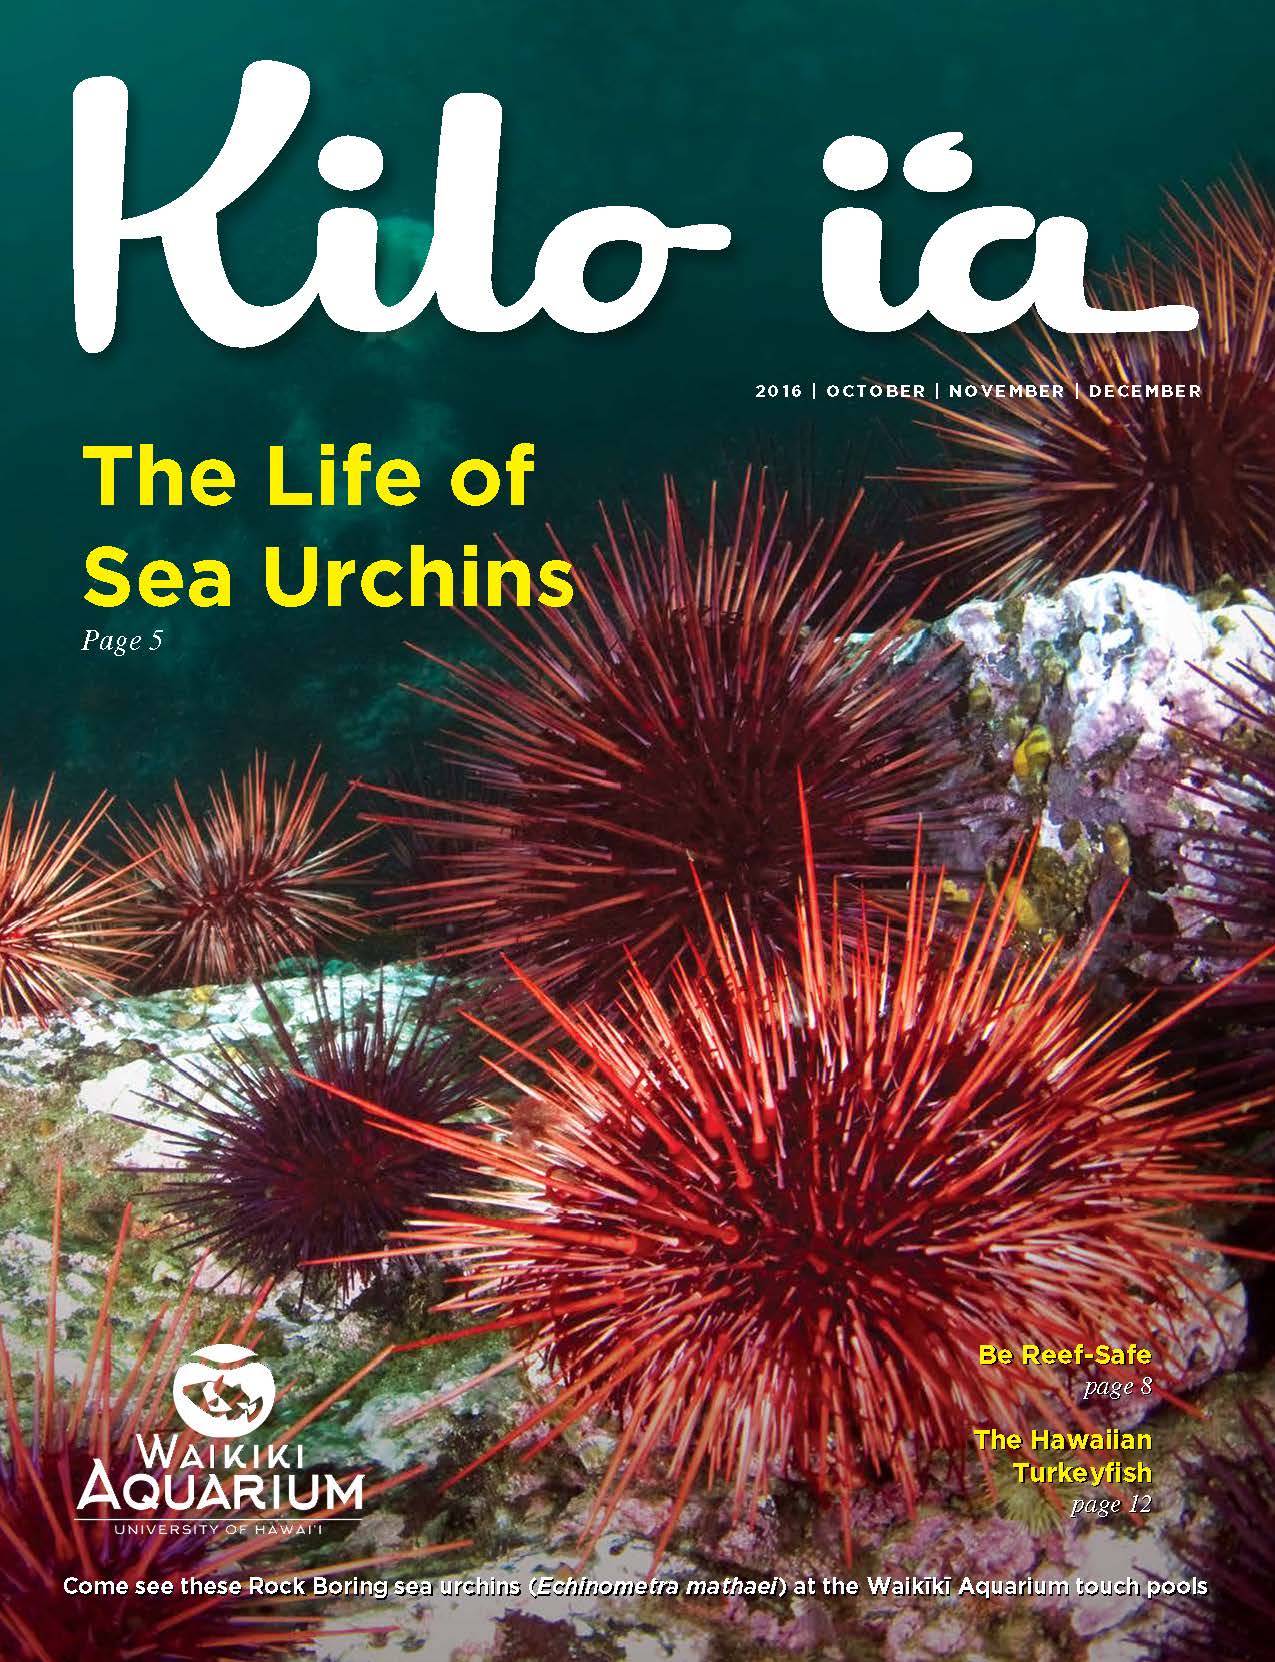 Kilo i'a magazine 2016